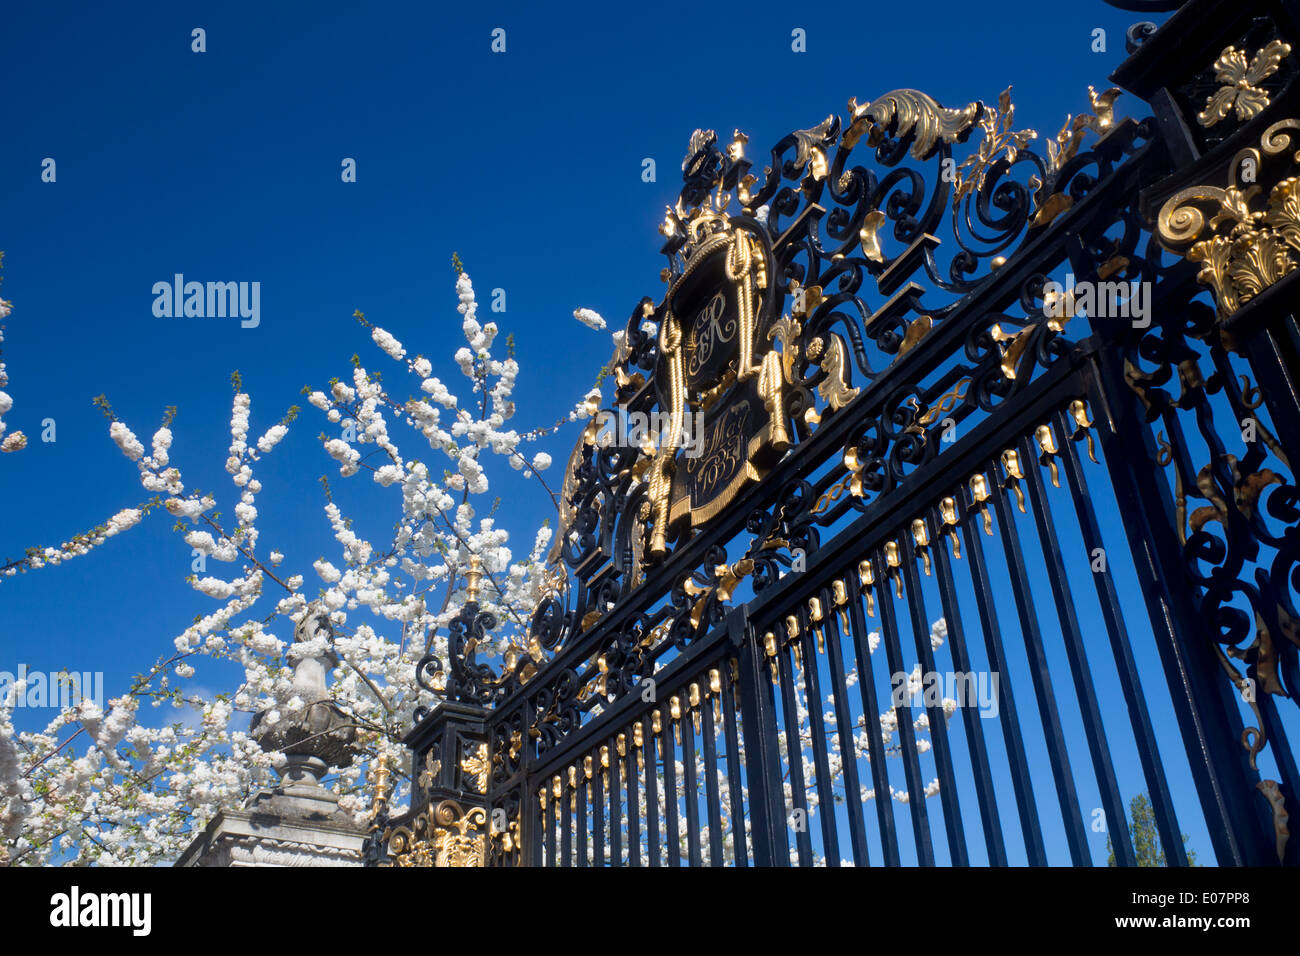 Portes du jubilé au printemps avec des fleurs blanches sur les arbres Le Regent's Park Londres Angleterre Royaume-uni Banque D'Images